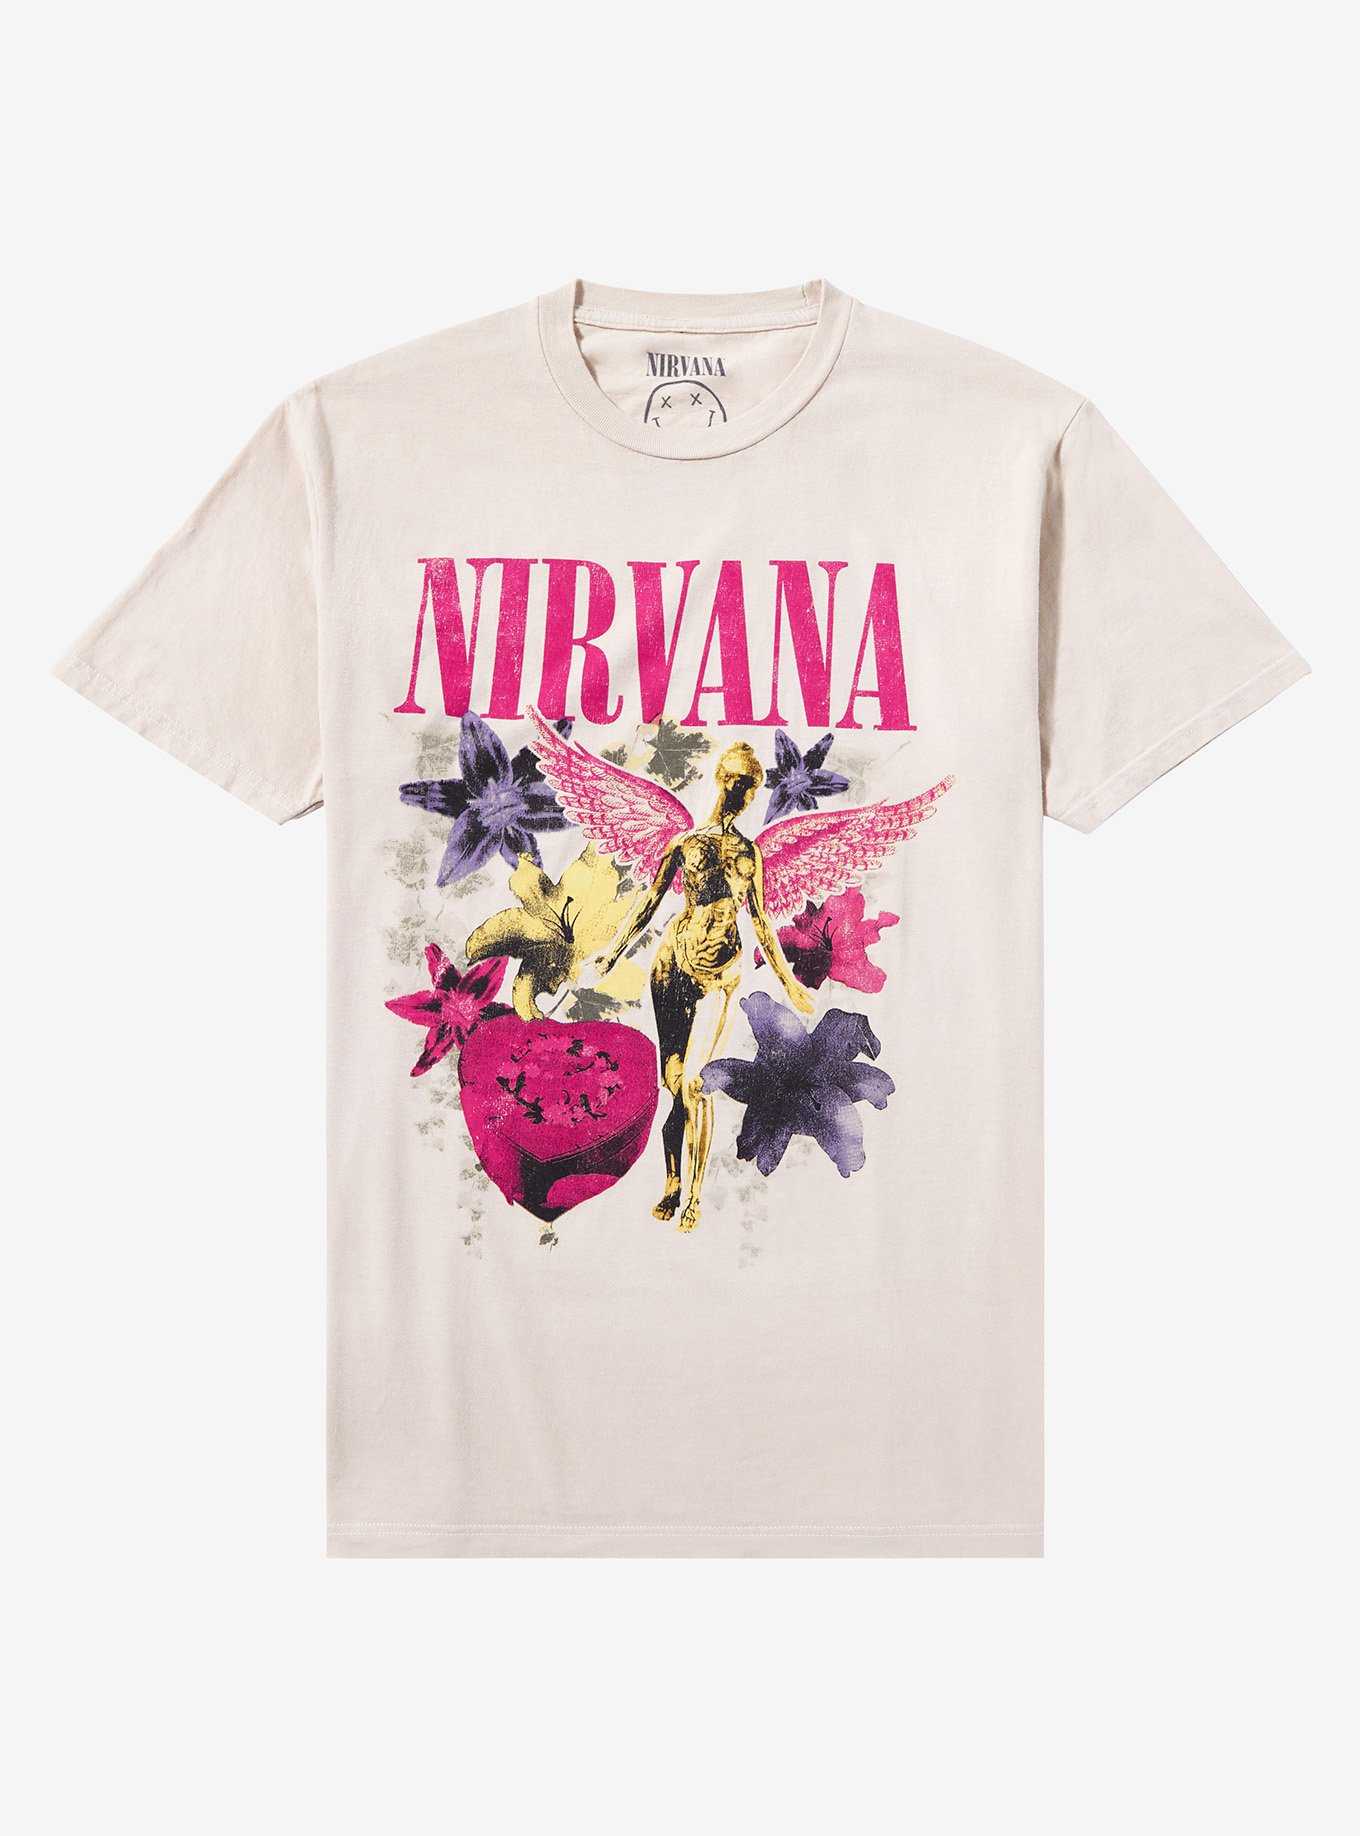 Nirvana In Utero Flowers Girls T-Shirt, , hi-res